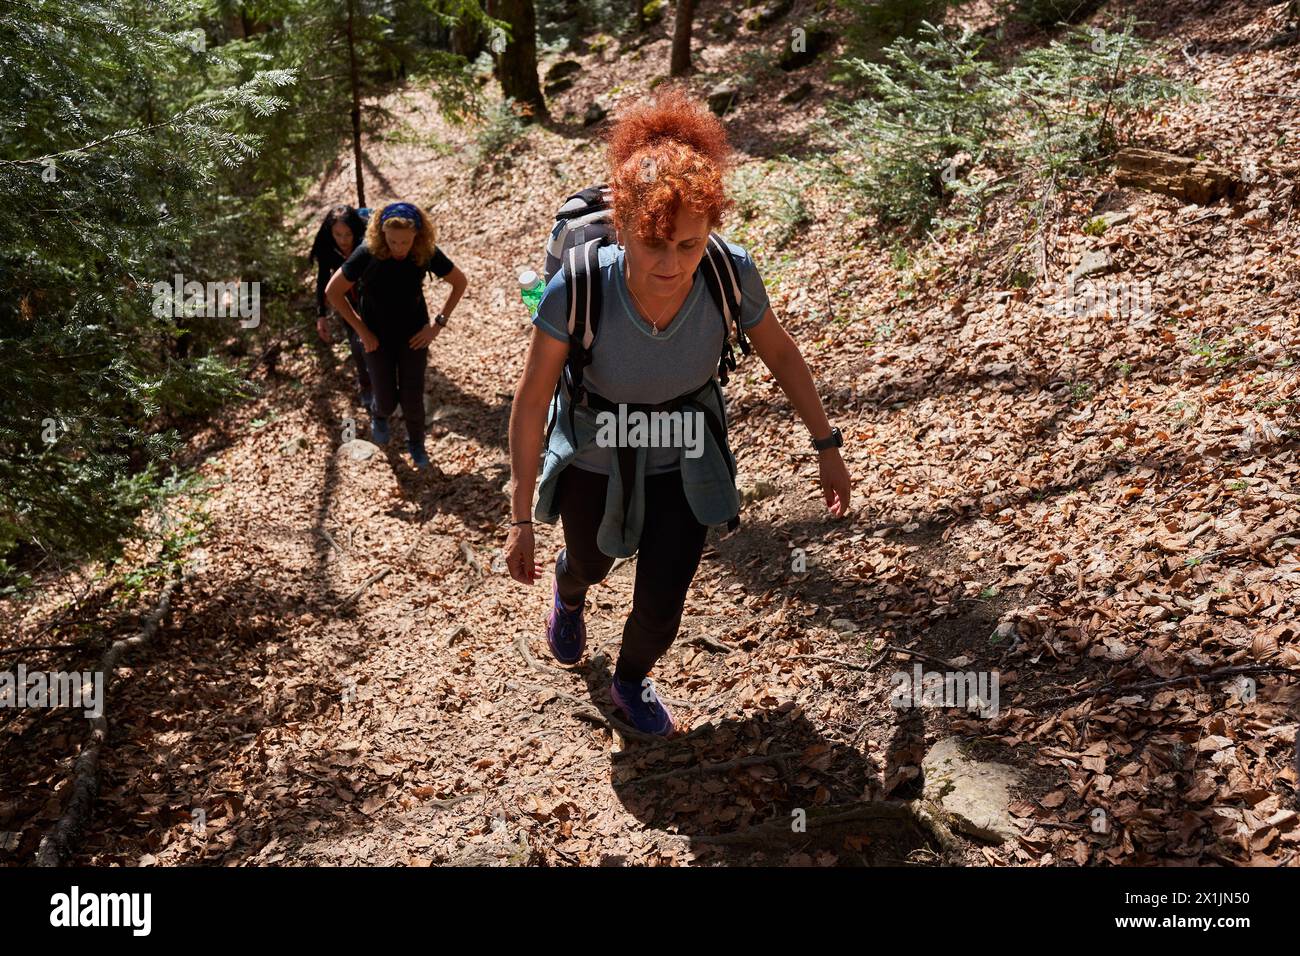 Gruppo di donne escursioniste con zaini che camminano su un sentiero in montagna Foto Stock